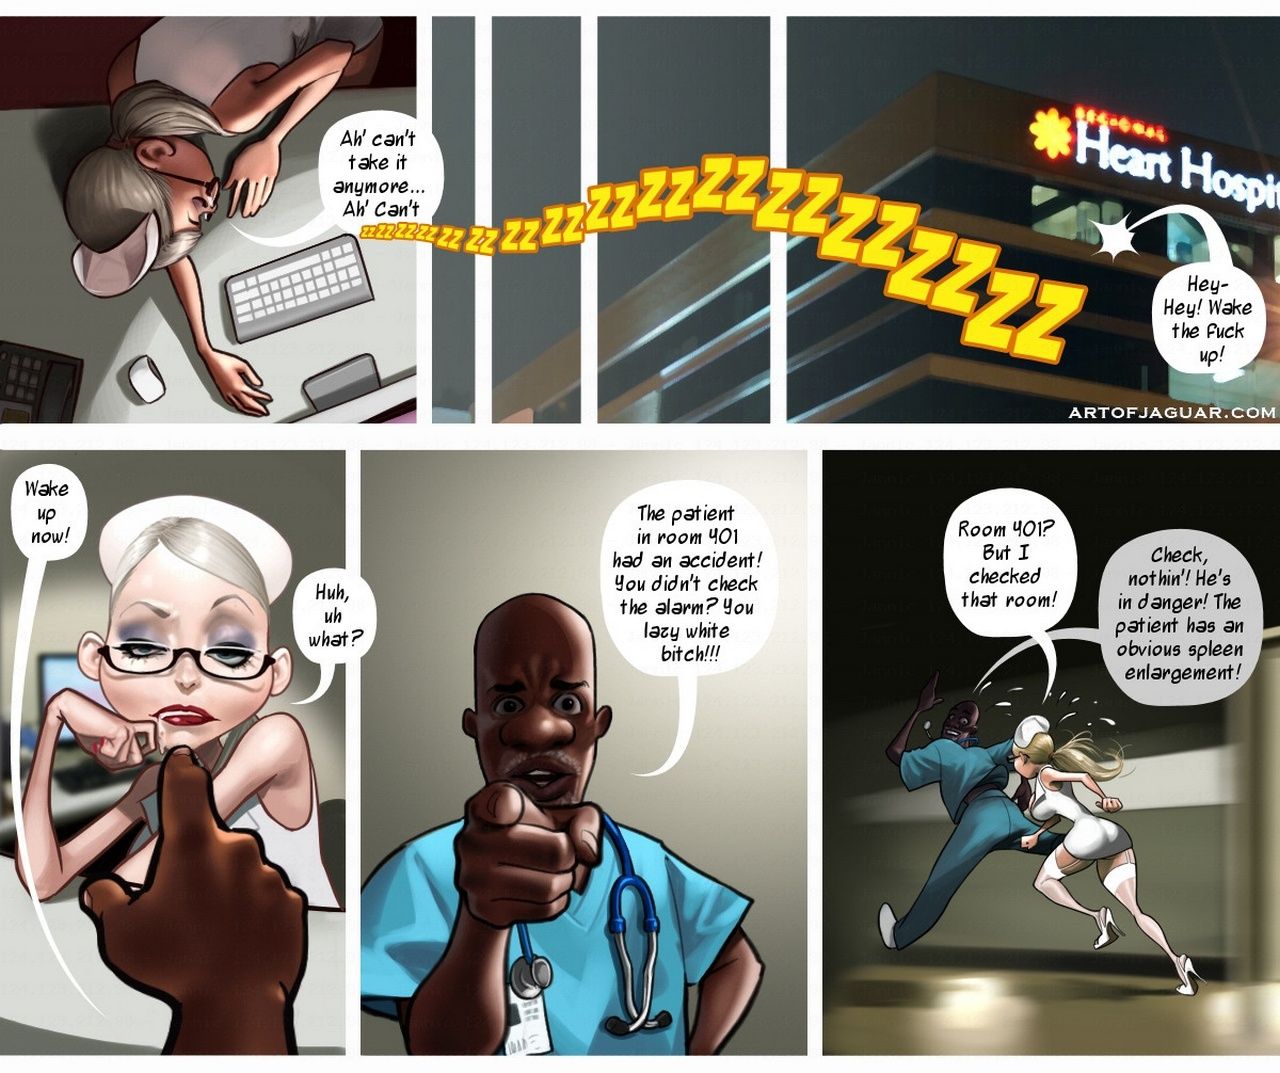 La noche enfermera Sara page 1